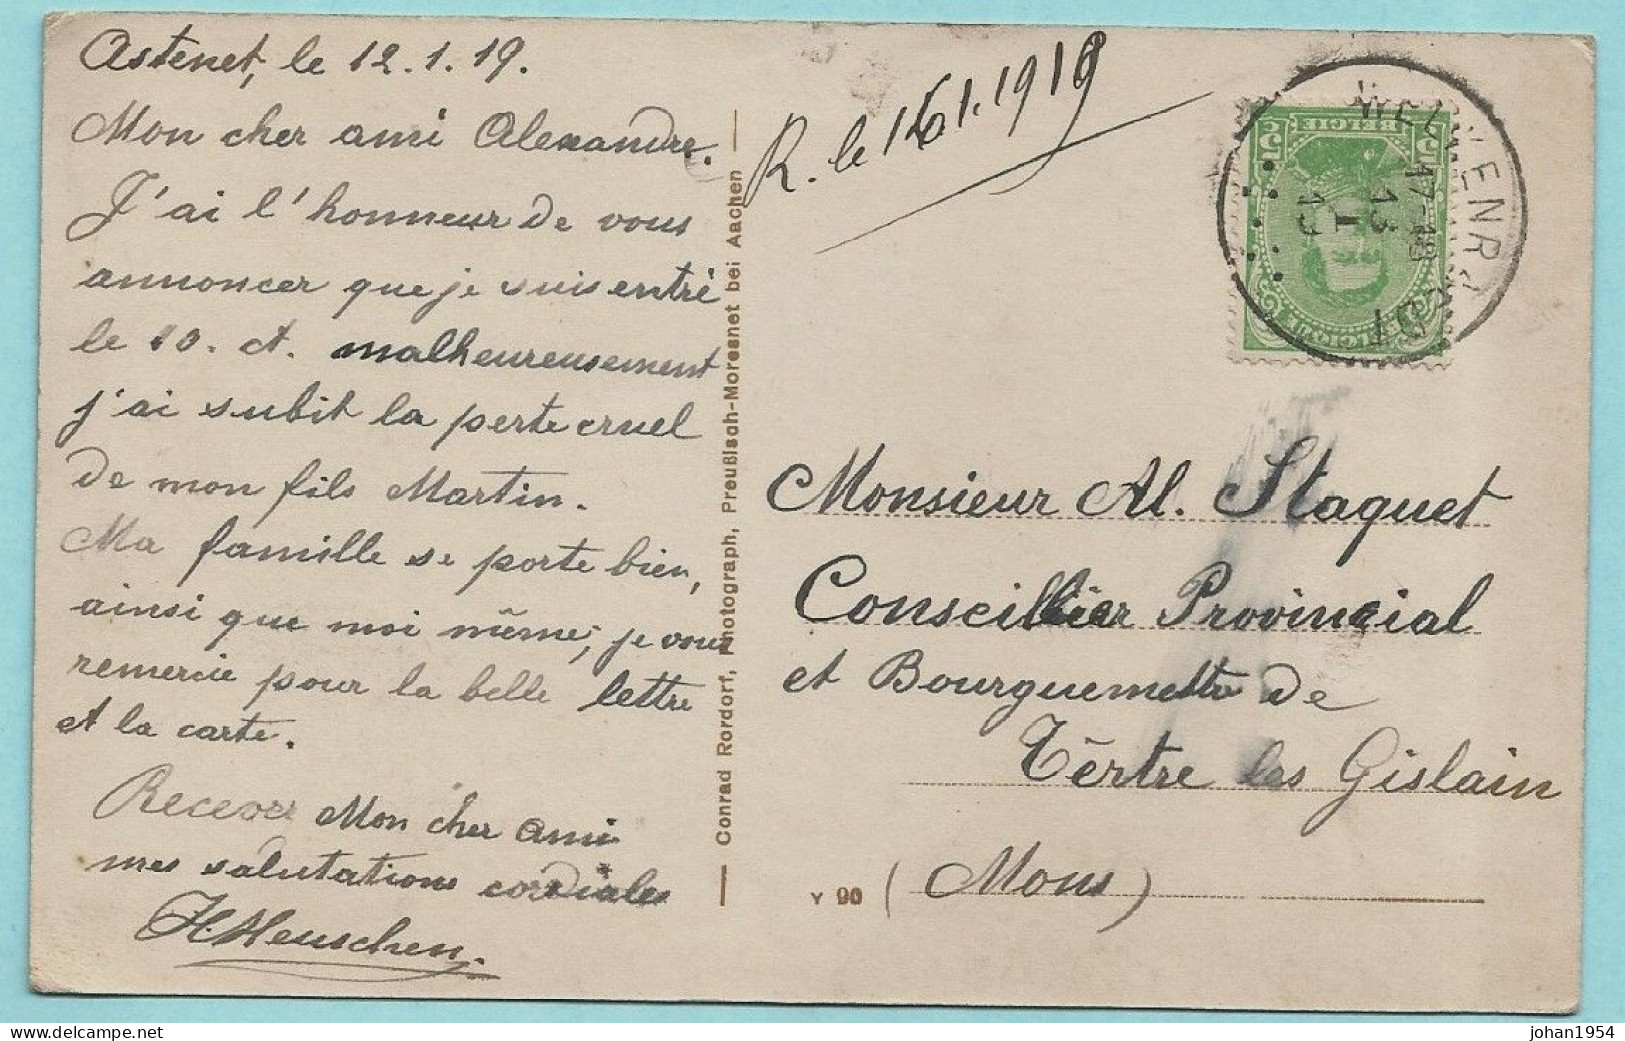 N°138 Op Postkaart Rittergut Eyneburg, Afst. HERGENRATH 13/01/1919 -- CANTONS DE L'EST / OOSTKANTONS - 1915-1920 Albert I